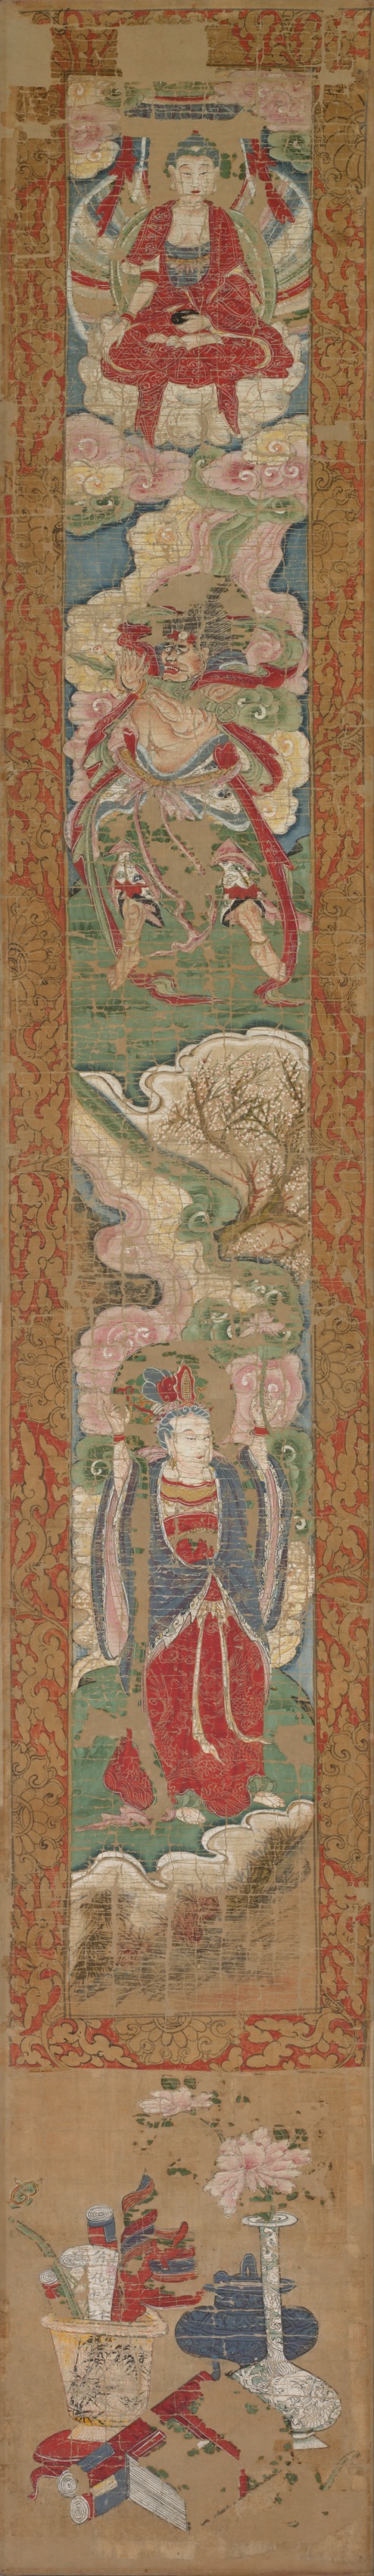 Buddhist Panel